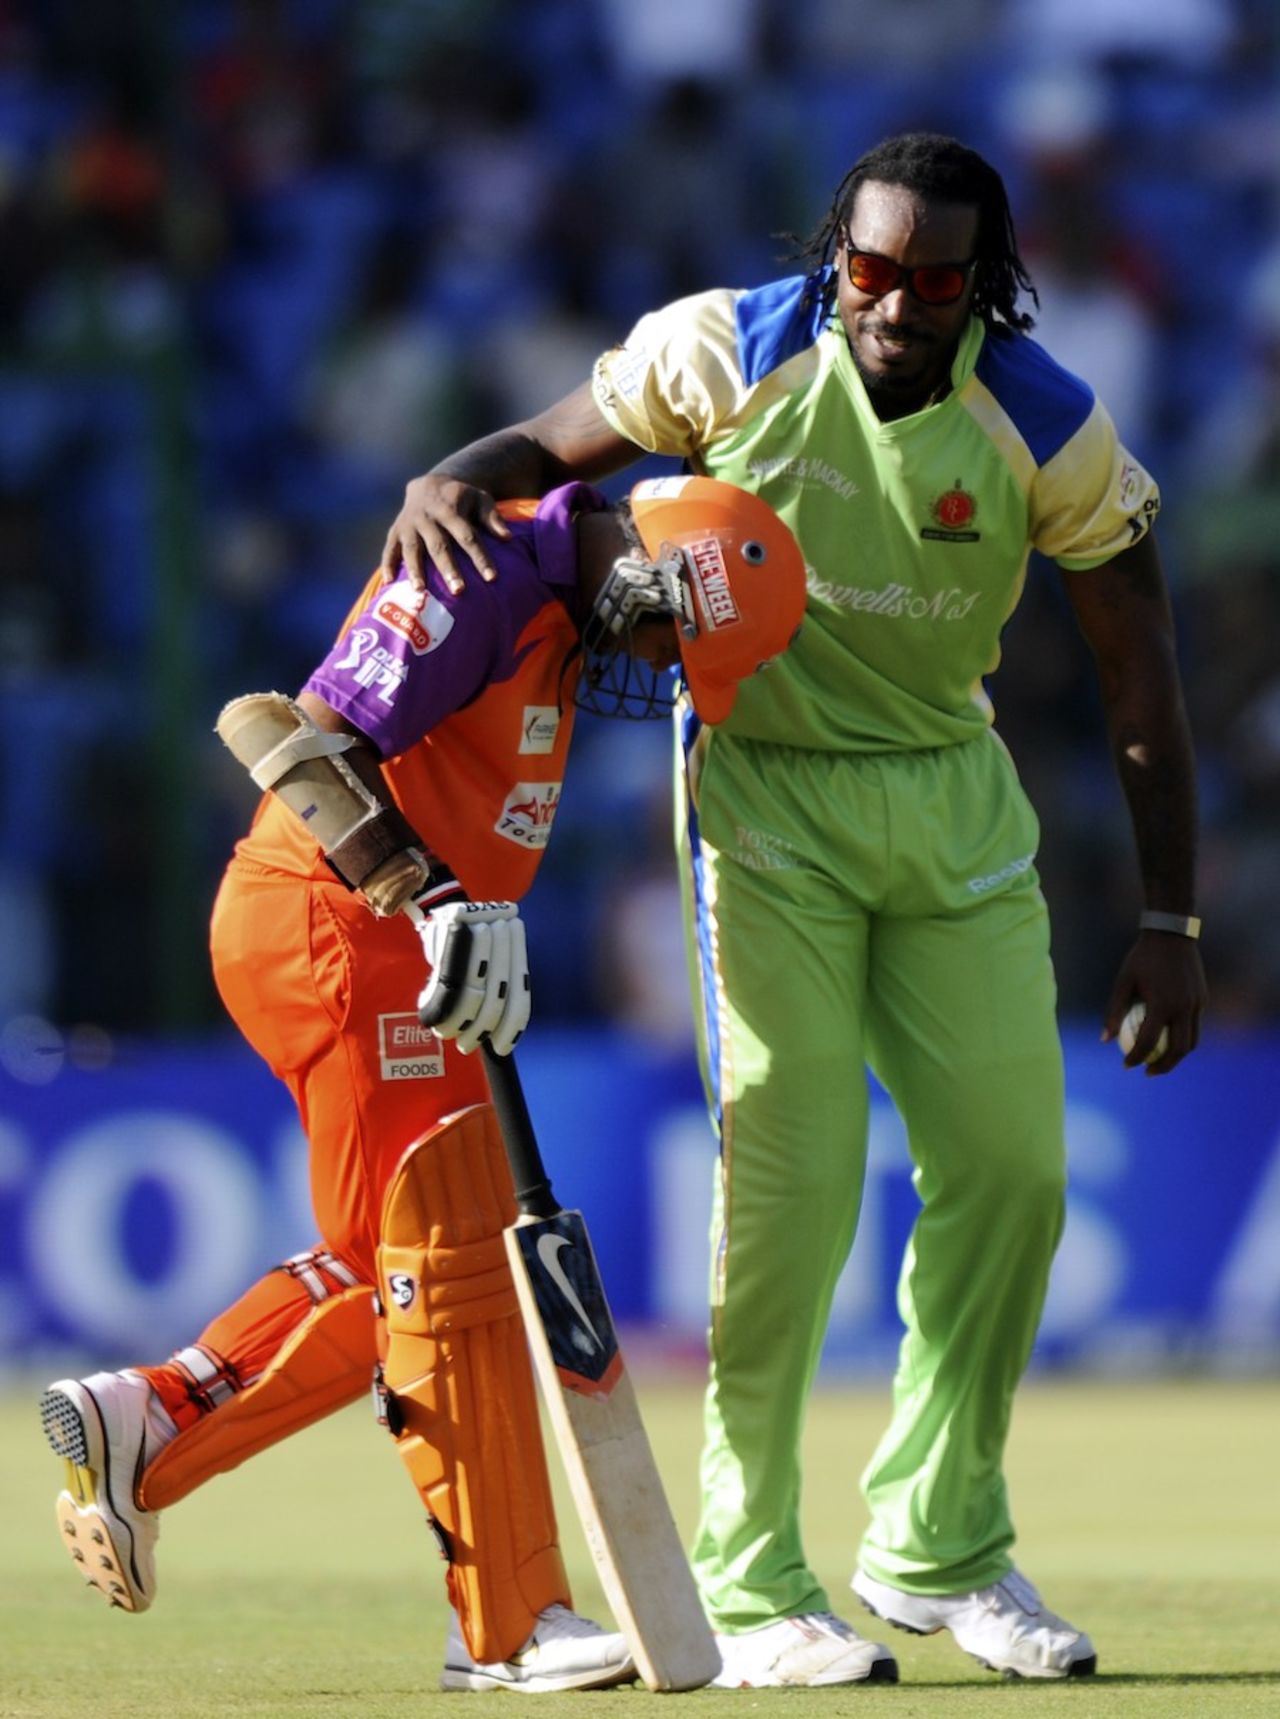 Chris Gayle puts an arm around Parthiv Patel, Bangalore v Kochi, IPL 2011, Bangalore, May 8, 2011